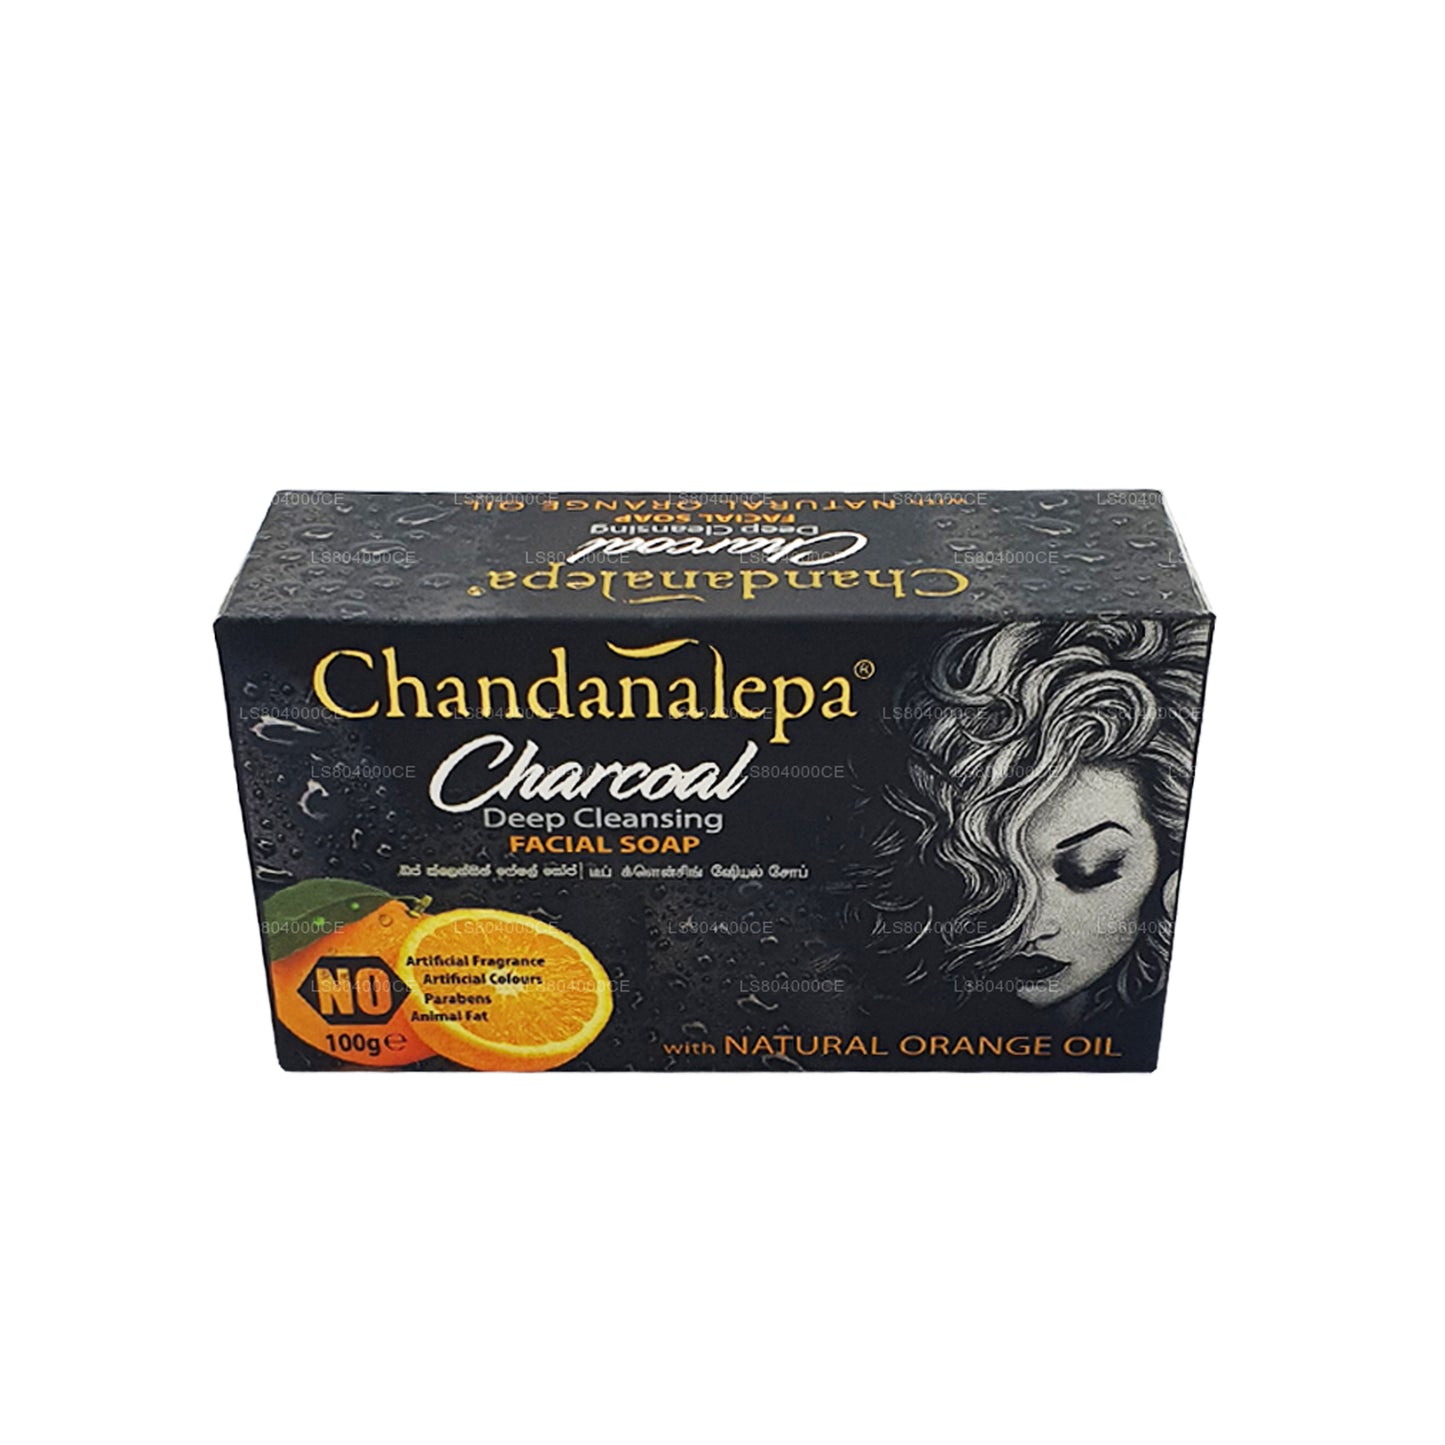 Chandanalepa チャコールディープクレンジングバー (100g)